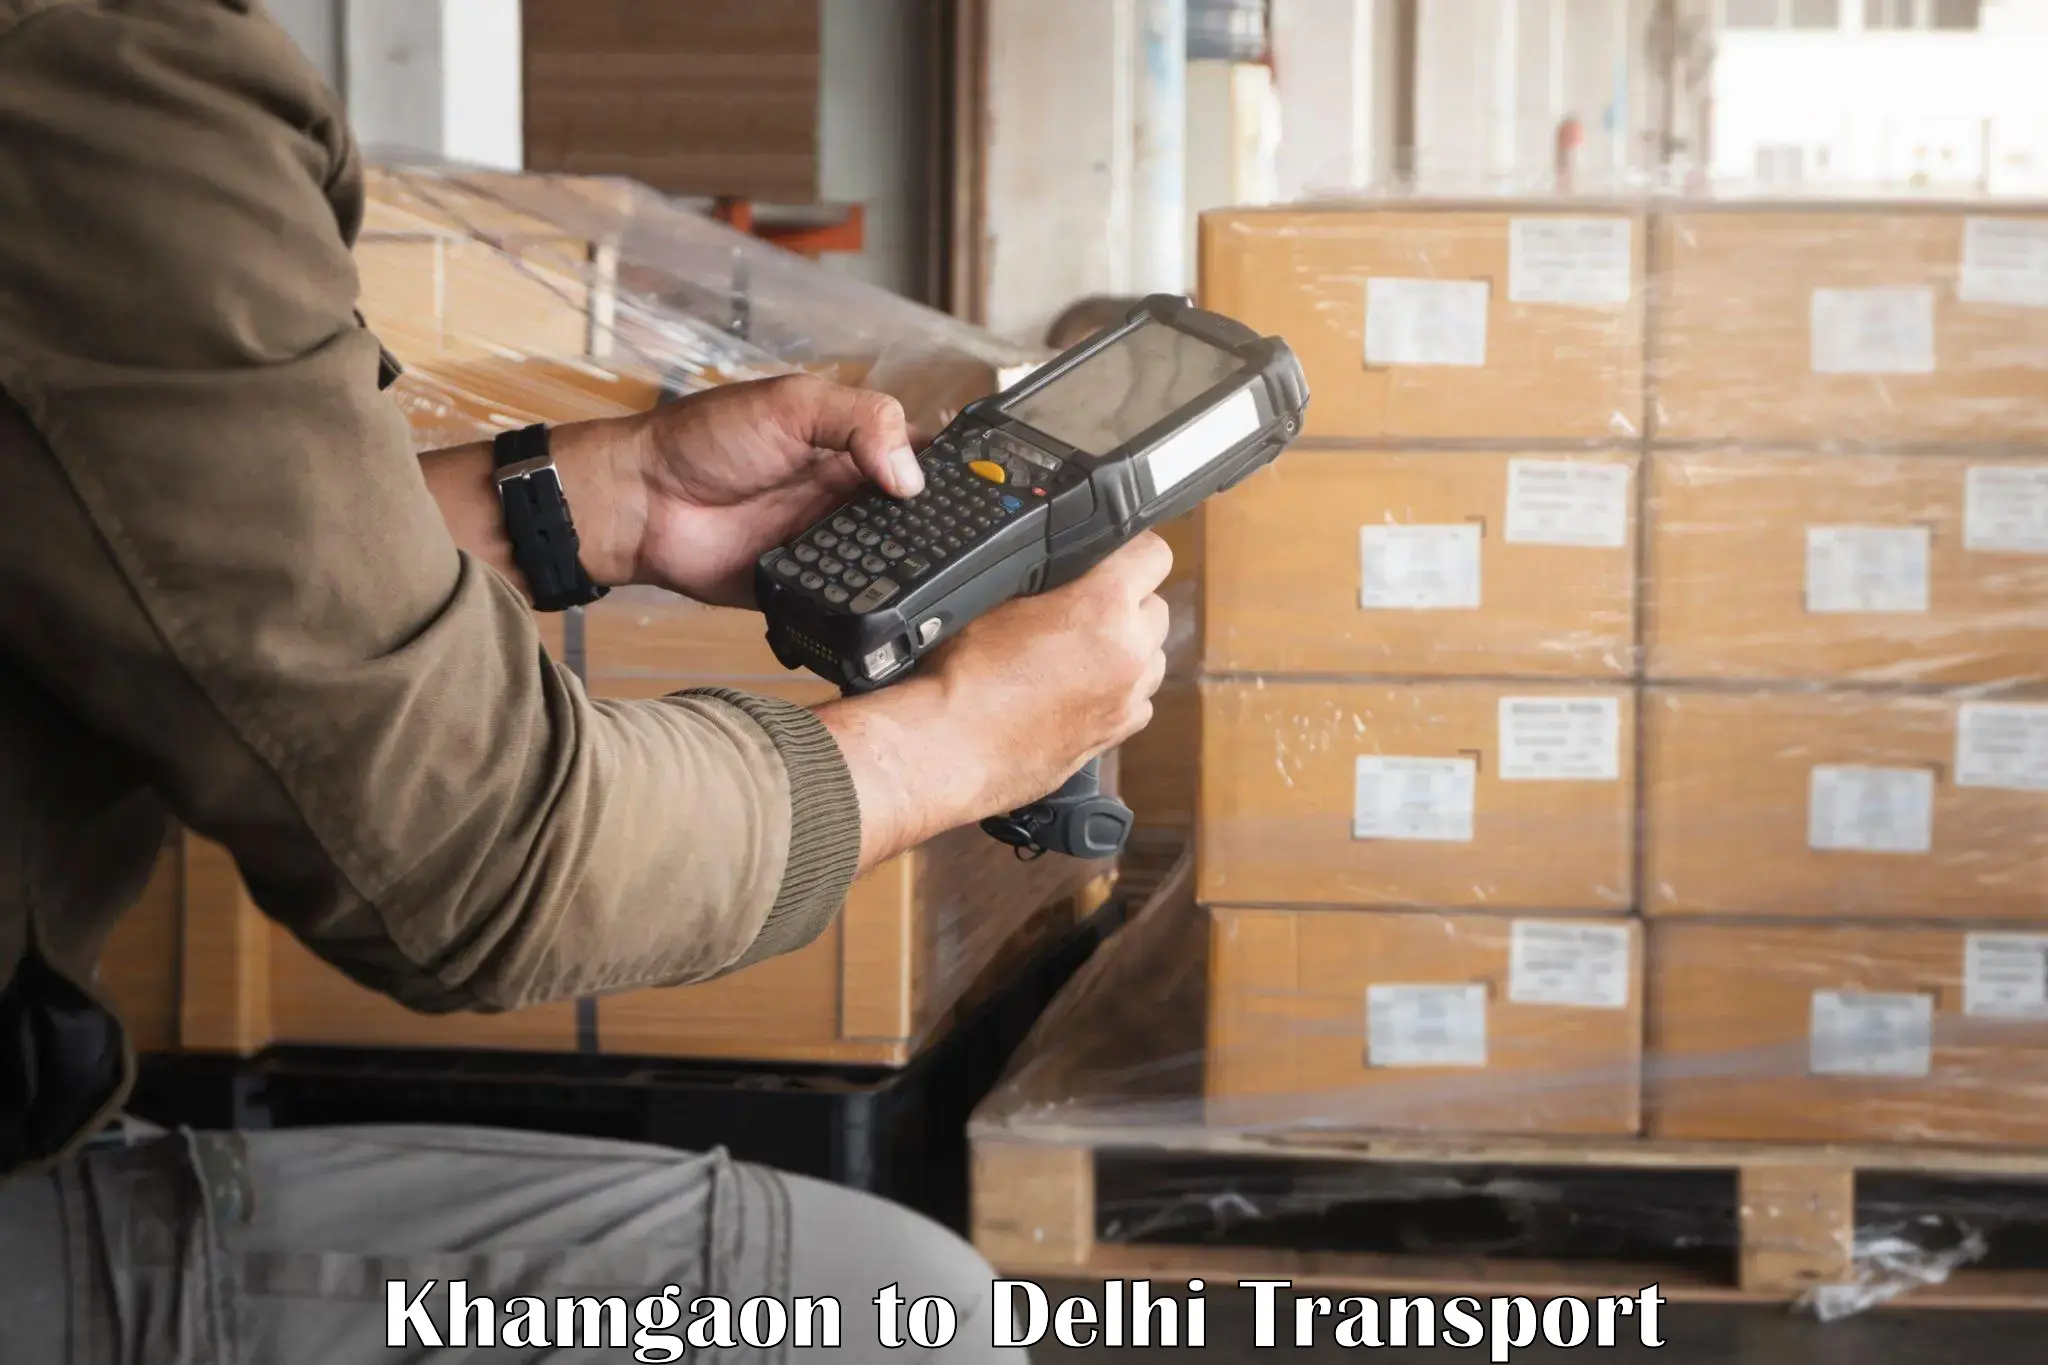 Delivery service Khamgaon to Guru Gobind Singh Indraprastha University New Delhi